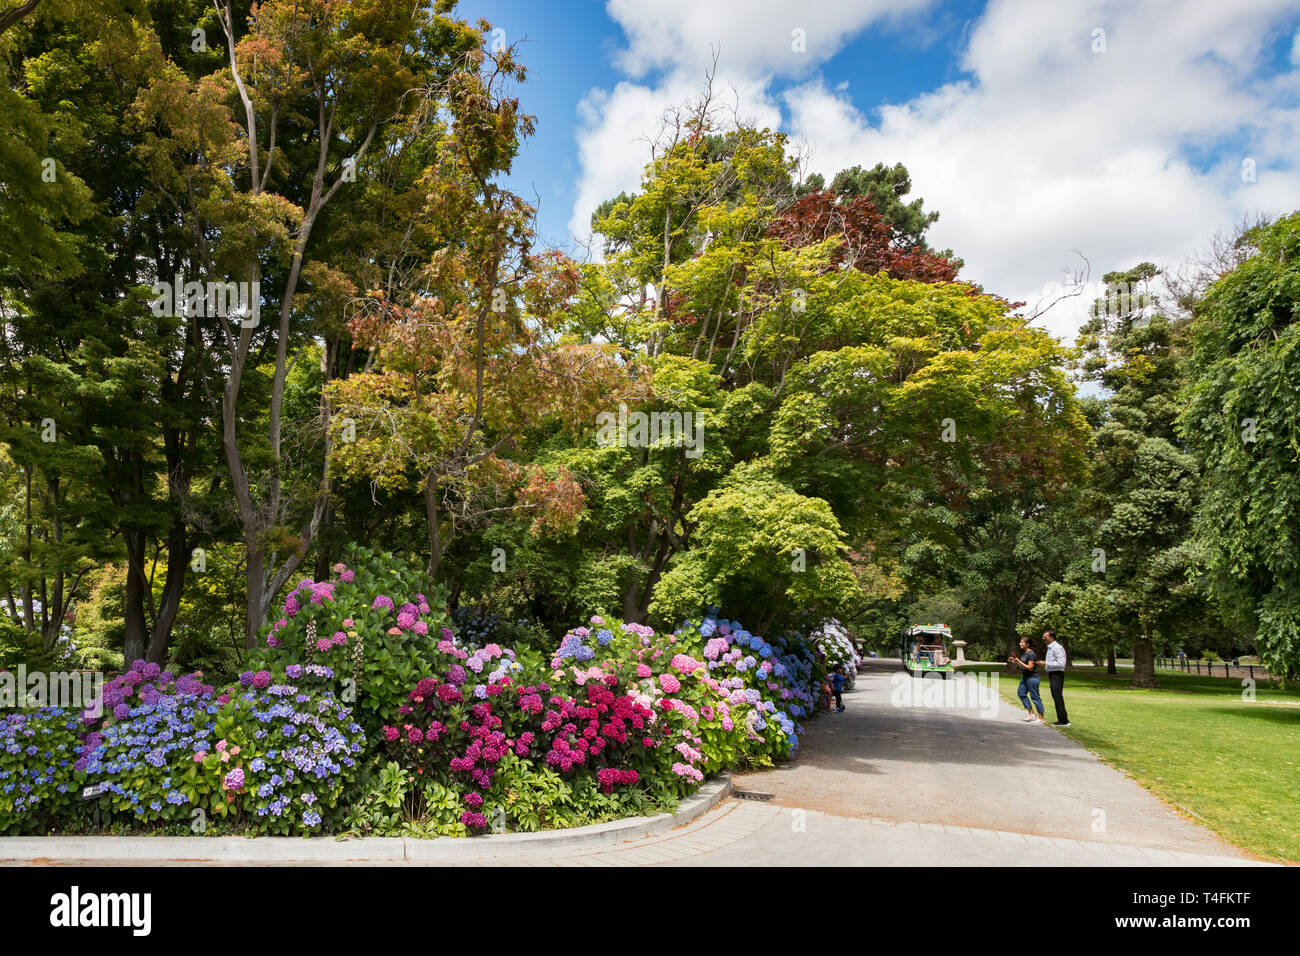 8 Janvier 2019 : Christchurch, Nouvelle-Zélande - touristes prenant des photos à l'hortensias colorés dans les jardins botaniques, sur une belle journée d'été. Banque D'Images